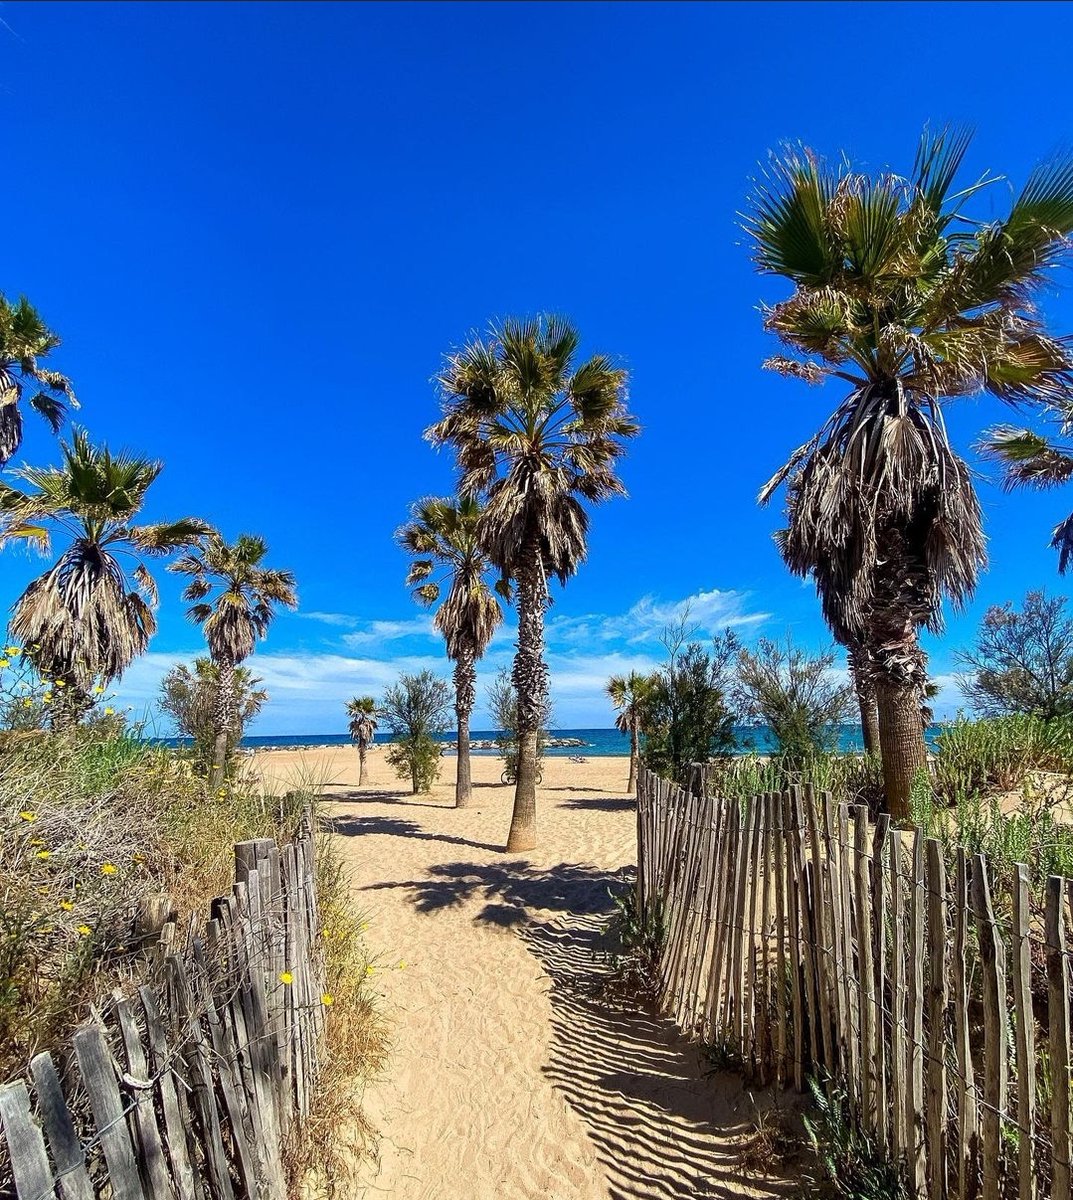 🌊 Bienvenue à Saint-Aygulf, sur la plage des Esclamandes avec ses beaux palmiers, son sable chaud et ses digues ! 🌴

On adore s'y promener et s'y baigner ! Et vous, vous l'appréciez aussi ? 😎

📸 insta beautiful_frenchriviera